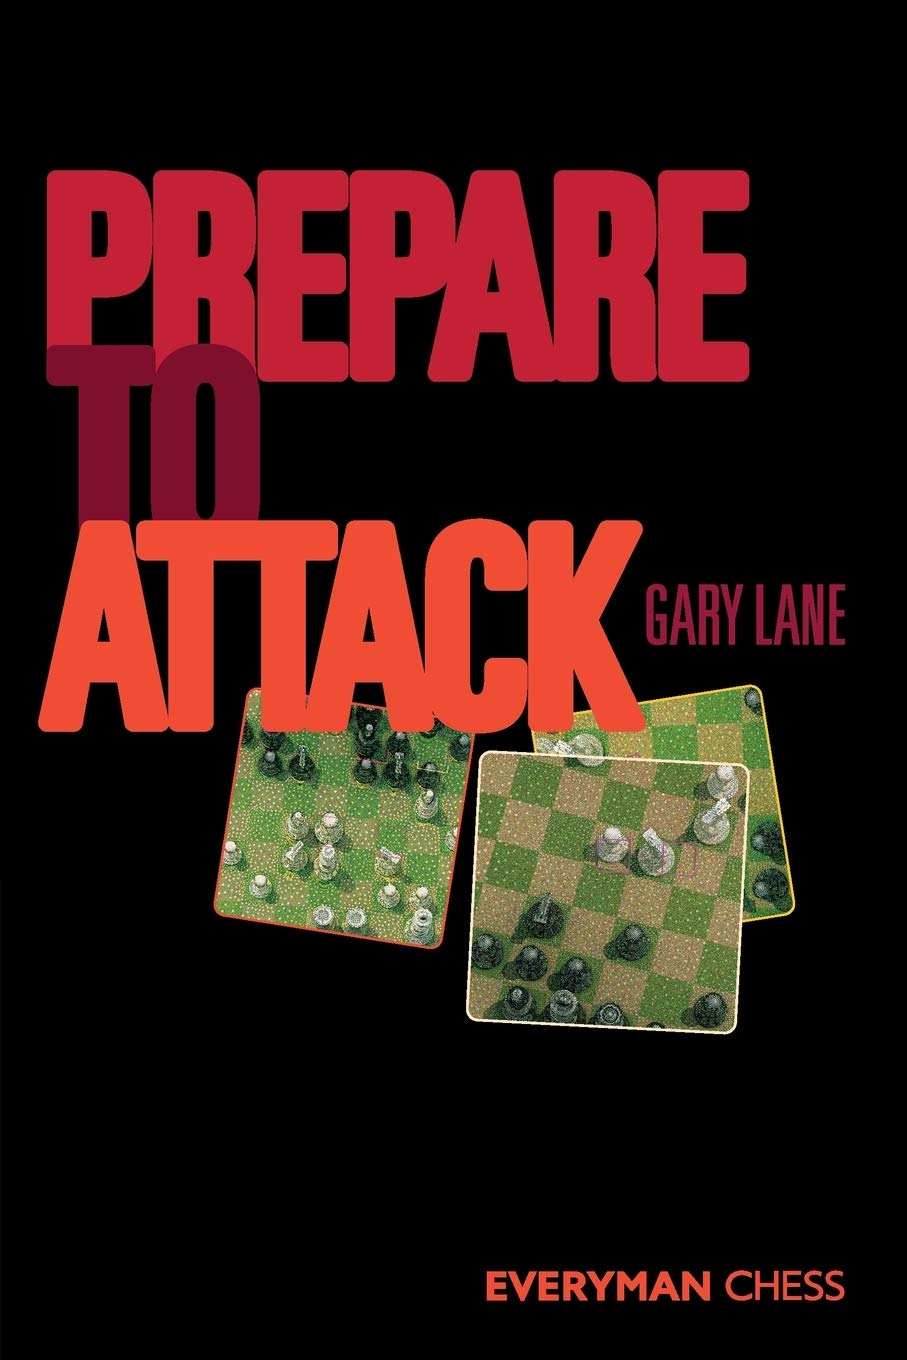 Lane, Gary (2011). Prepare to Attack. Everyman Chess. ISBN 978-1857446500.